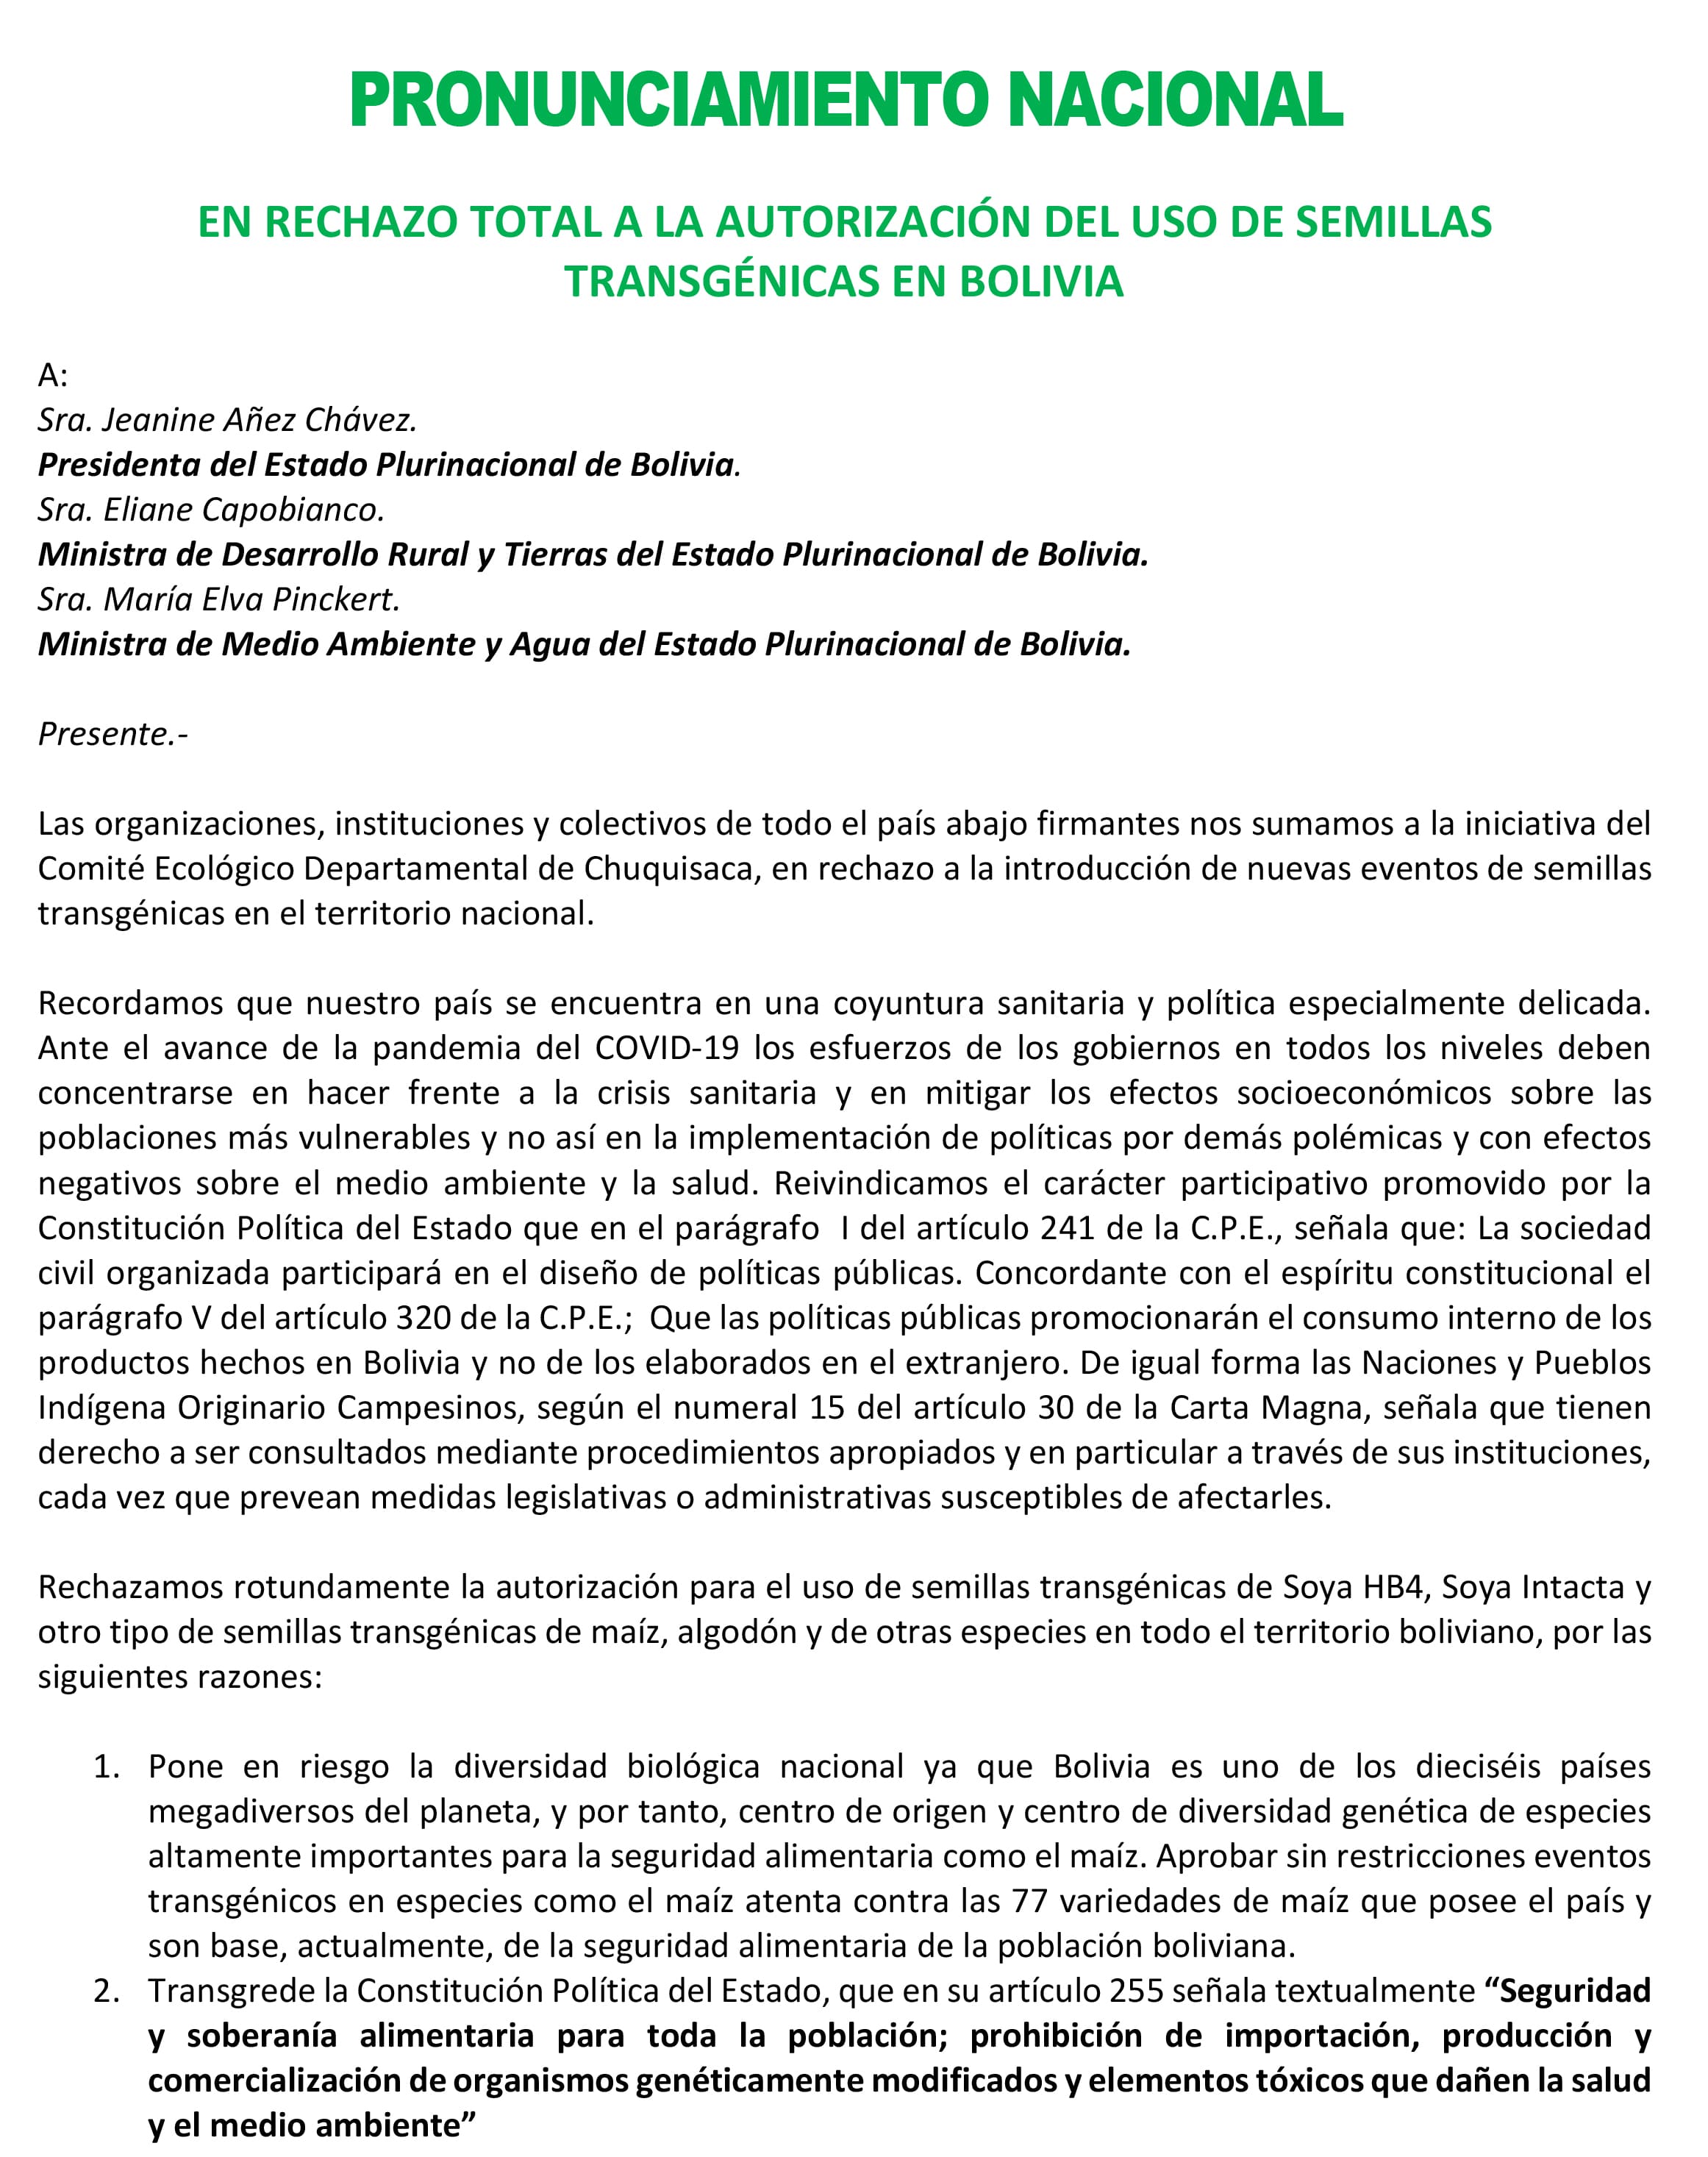 Pronunciamiento nacional en rechazo total a la autorización del uso de semillas trasngénicas en Bolivia (Mayo,2020))